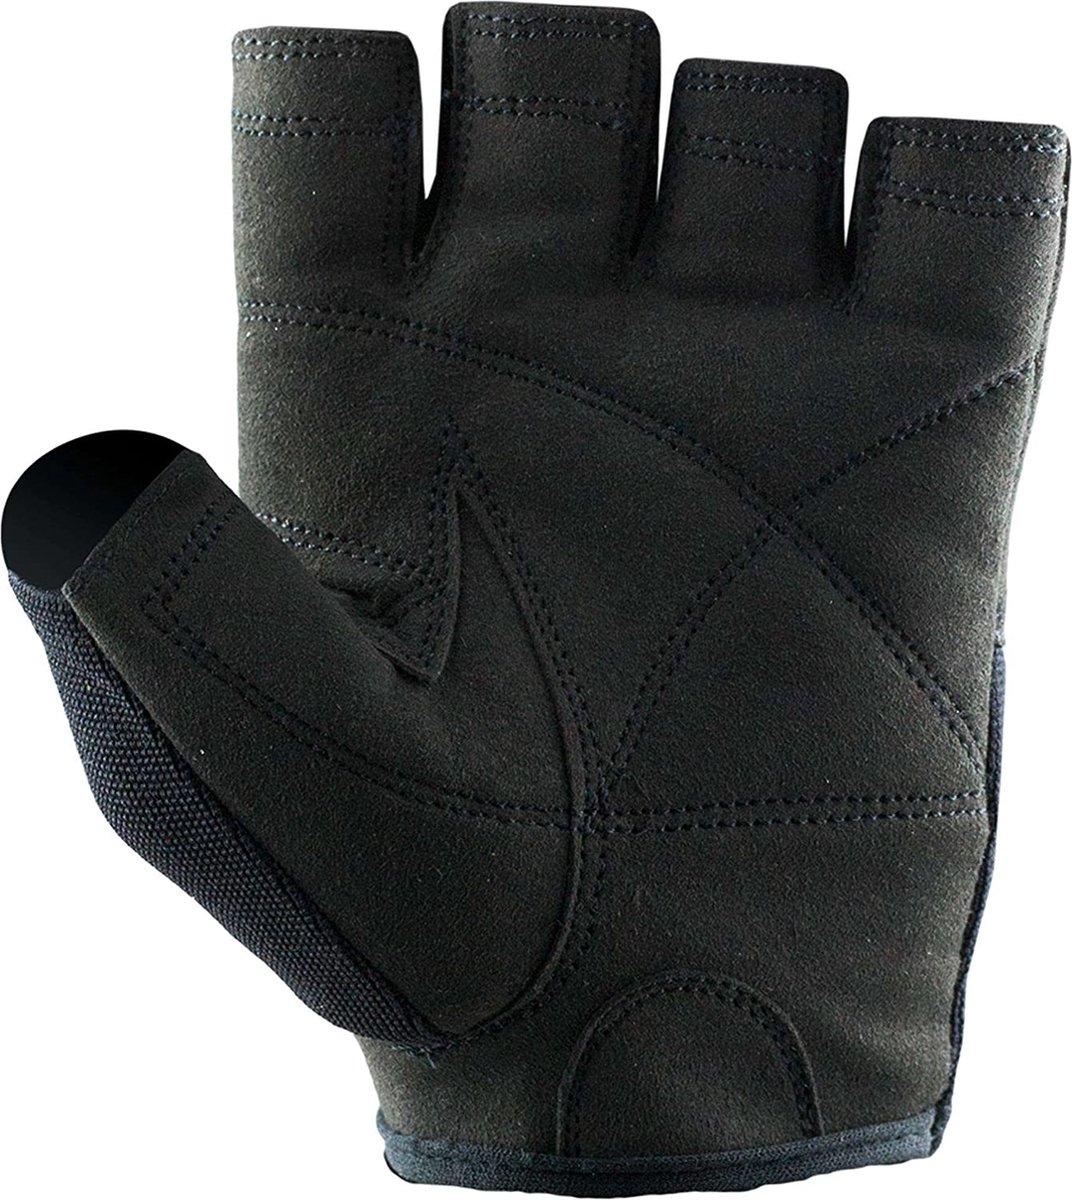 C.P. Sports Iron-handschoen comfort trainingshandschoen fitness handschoenen voor dames en heren